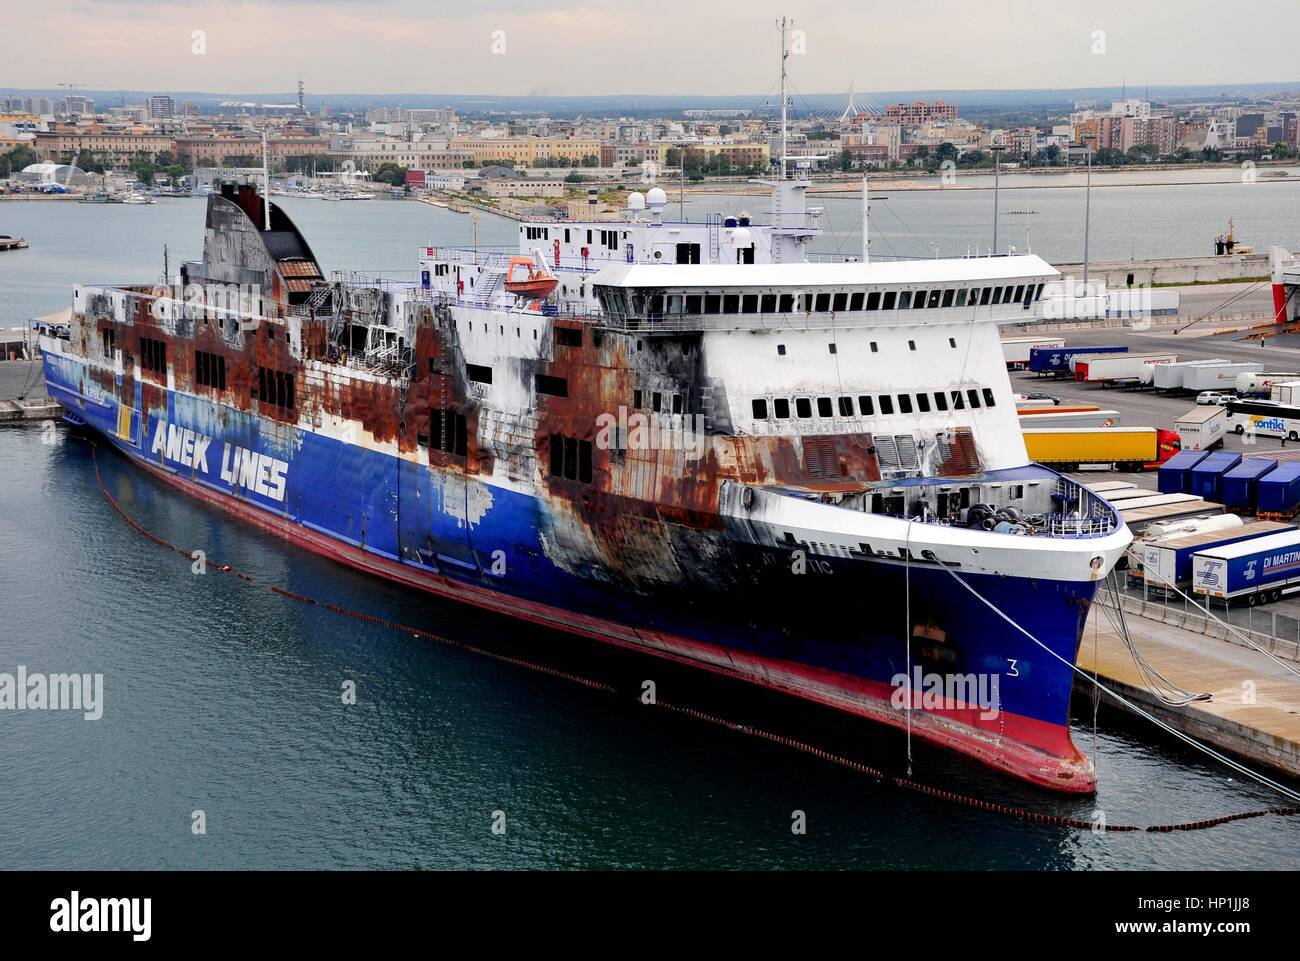 El coche quemado ferry 'Norman Atlántico' atraca en el puerto de Bari (Italia), 17 de agosto de 2016. En el ferry del griego Anek Lines estalló un incendio en el noroeste de la isla de Corfú el 28 de diciembre de 2014. Uso | en todo el mundo Foto de stock